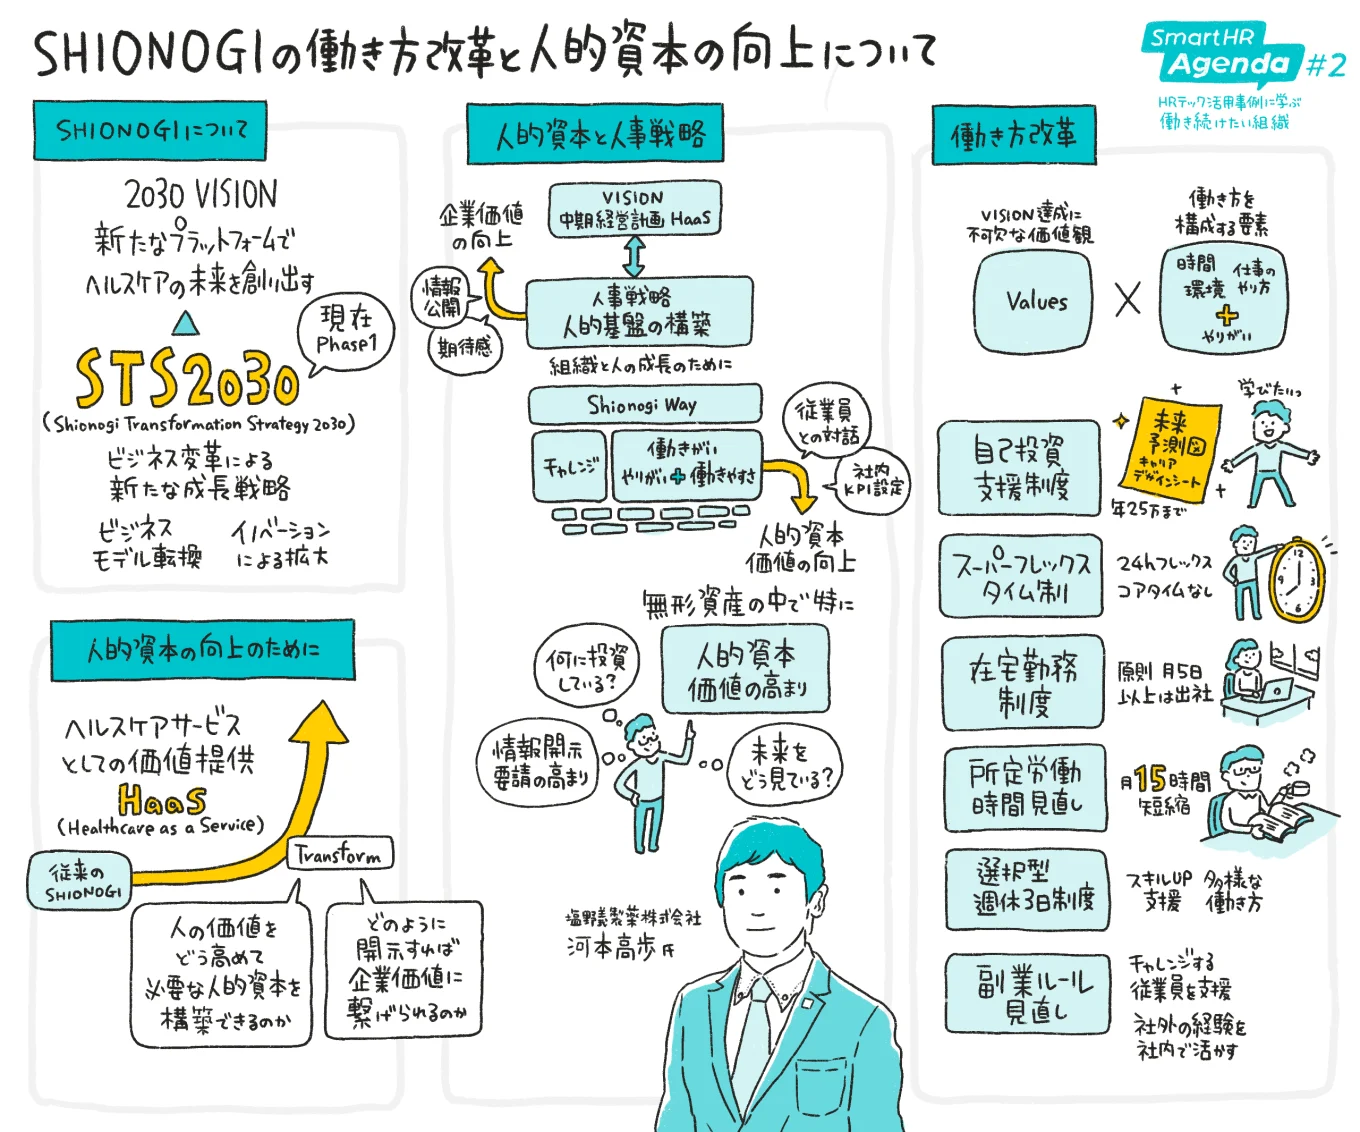 SHIONOGIの働き方改革と人的資本の向上について